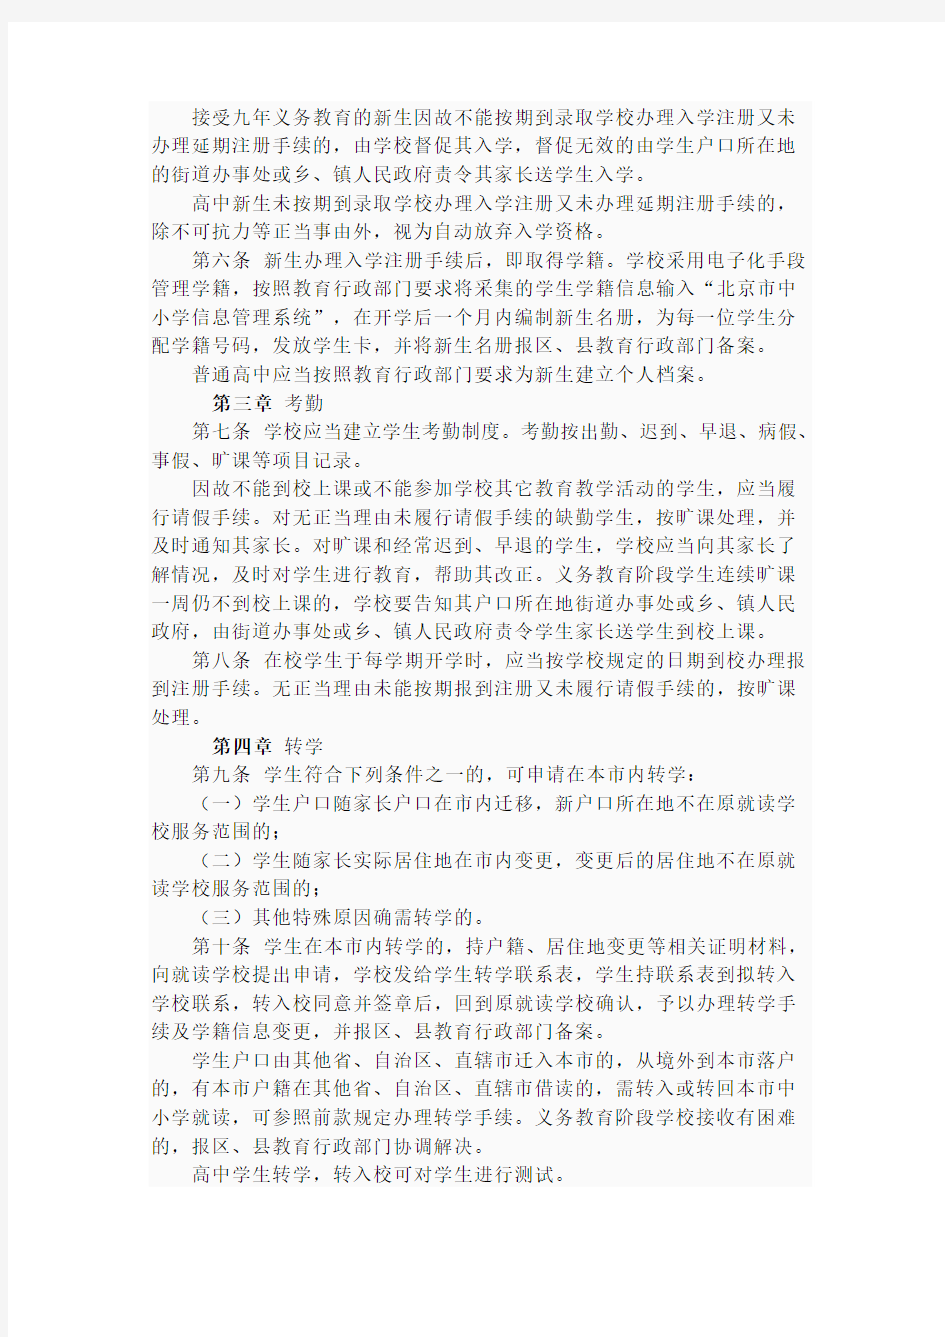 北京市教育委员会关于印发北京市中小学校学生学籍管理办法的通知